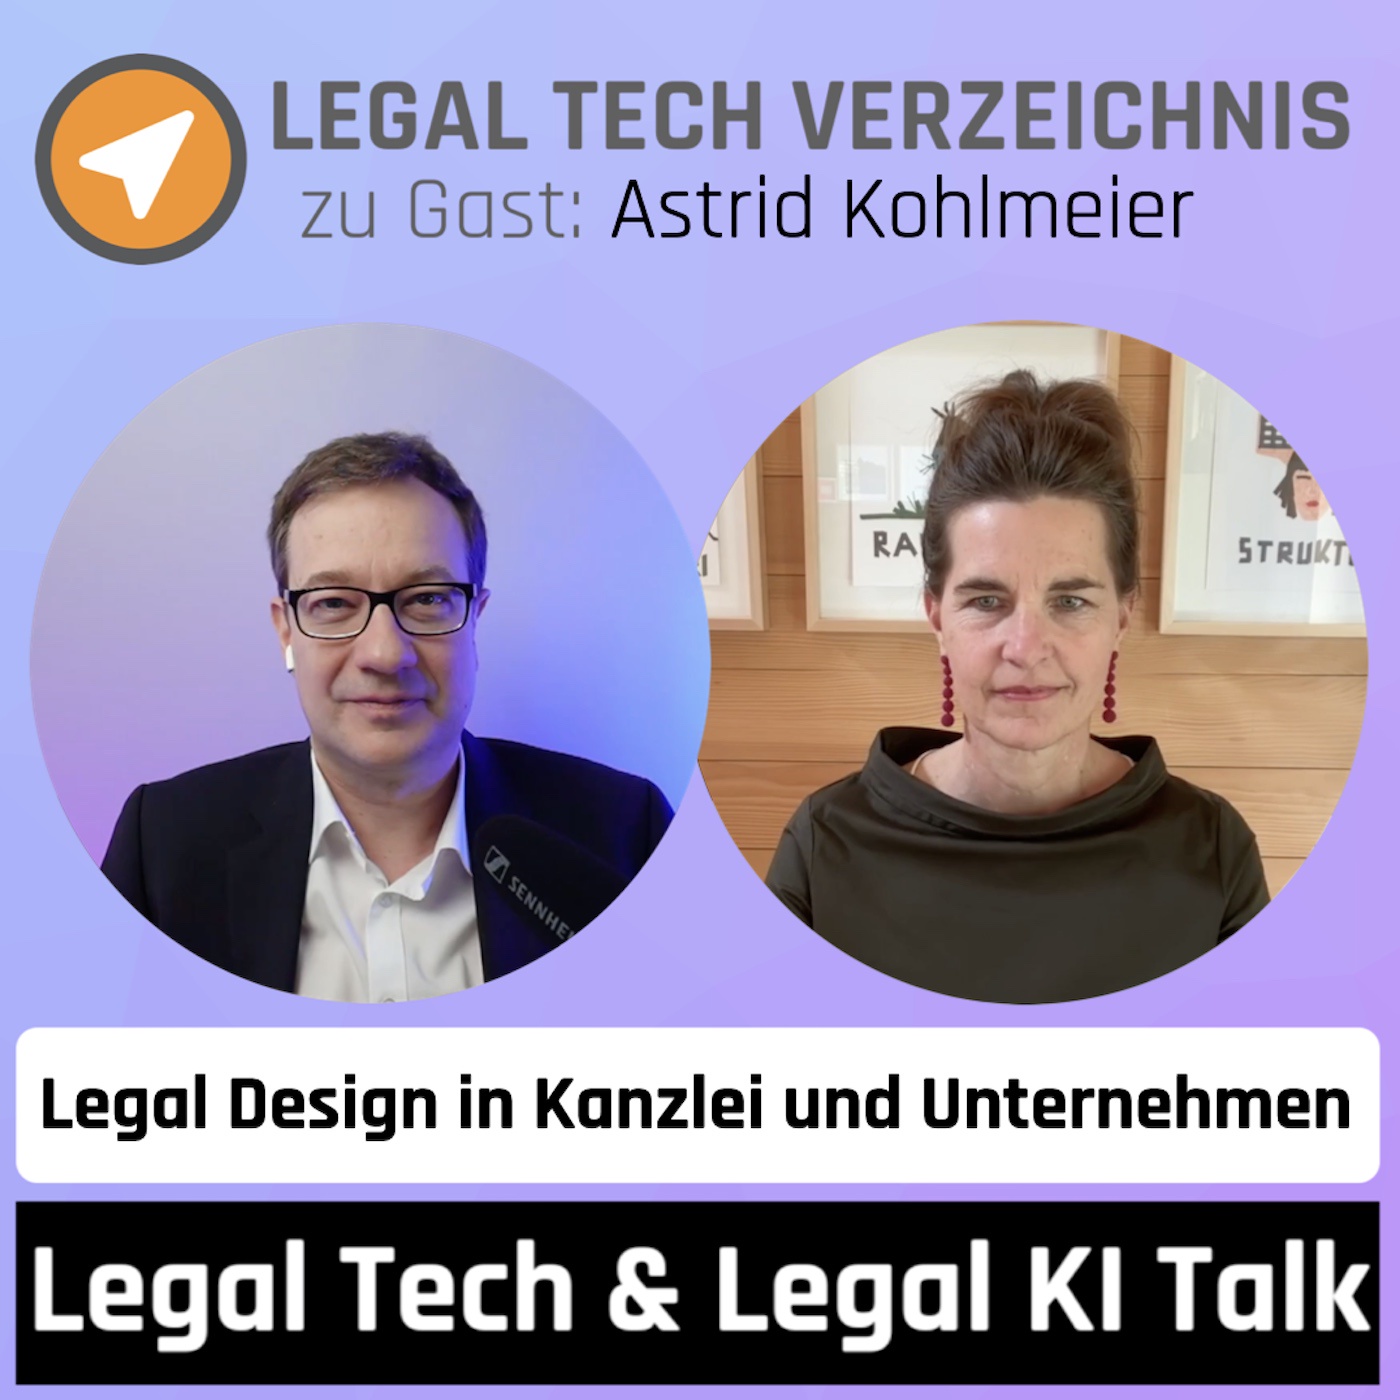 Legal Design in Kanzlei und Unternehmen